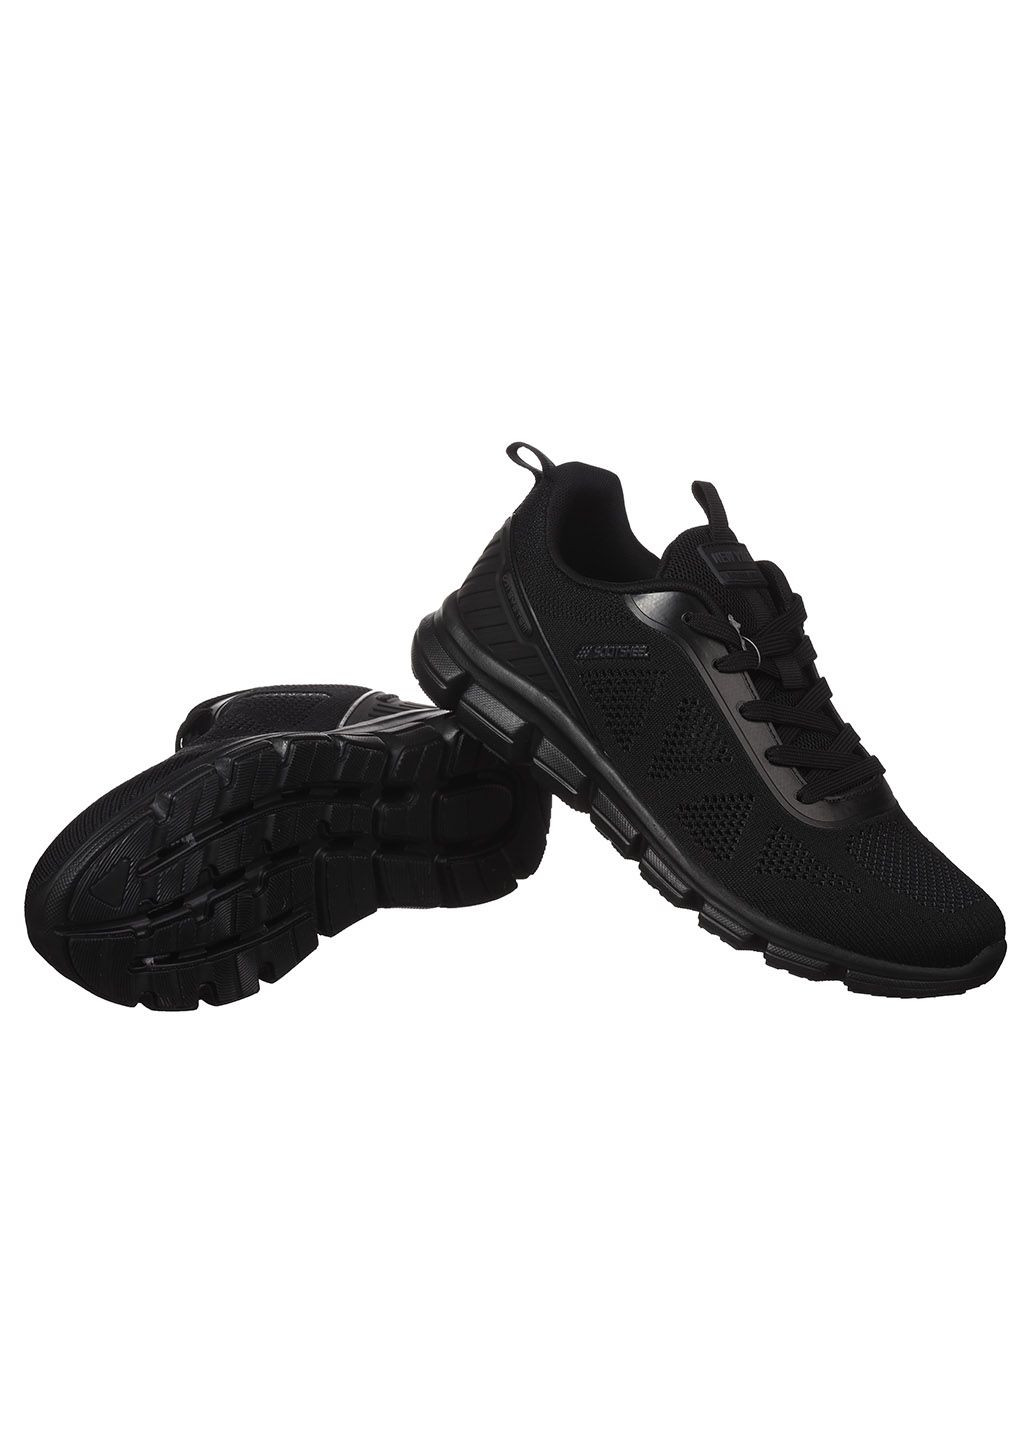 Черные демисезонные мужские кроссовки из текстиля спортивные Yike